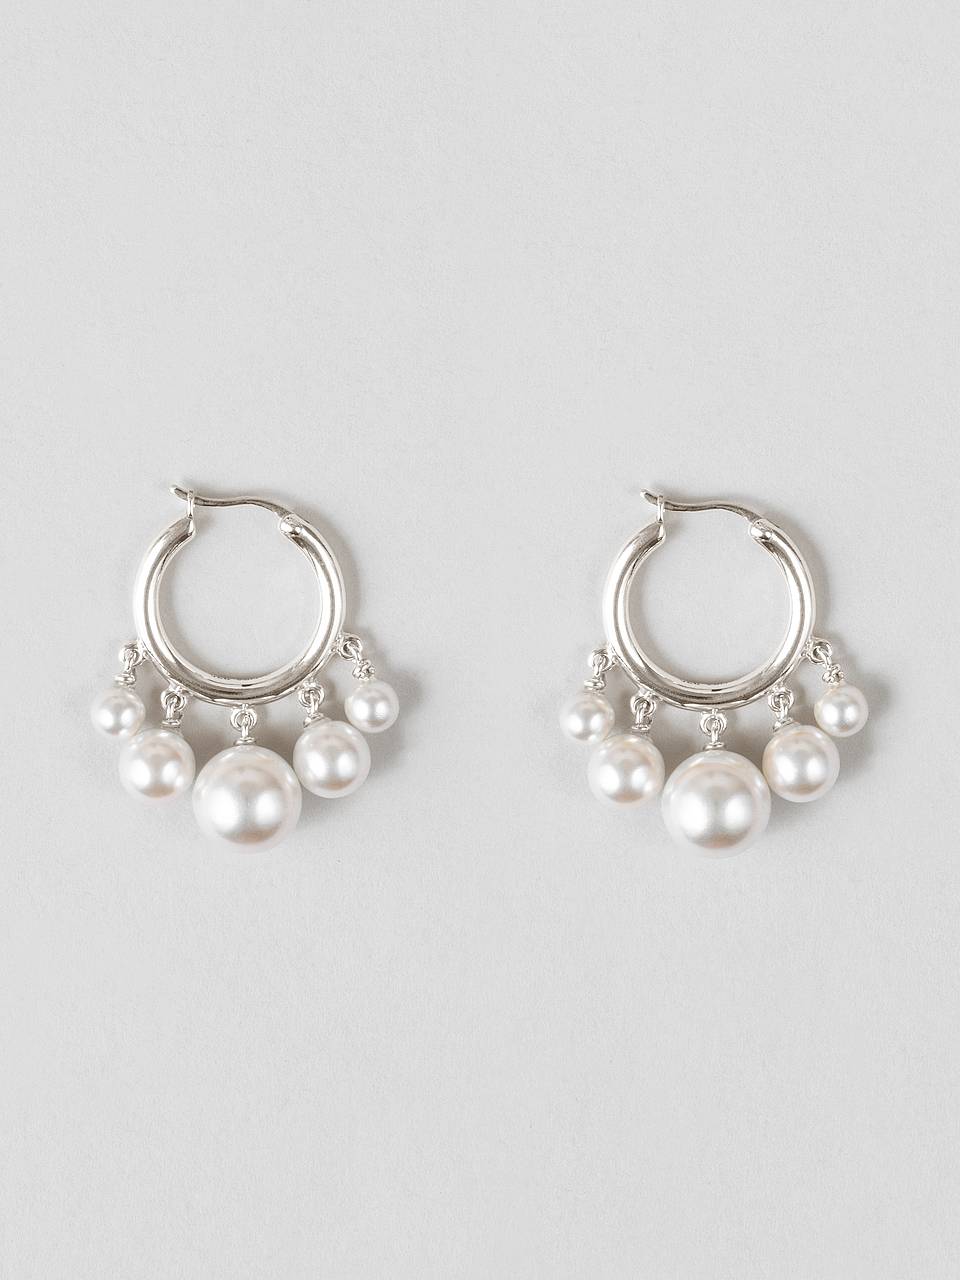 All Pearls Earrings